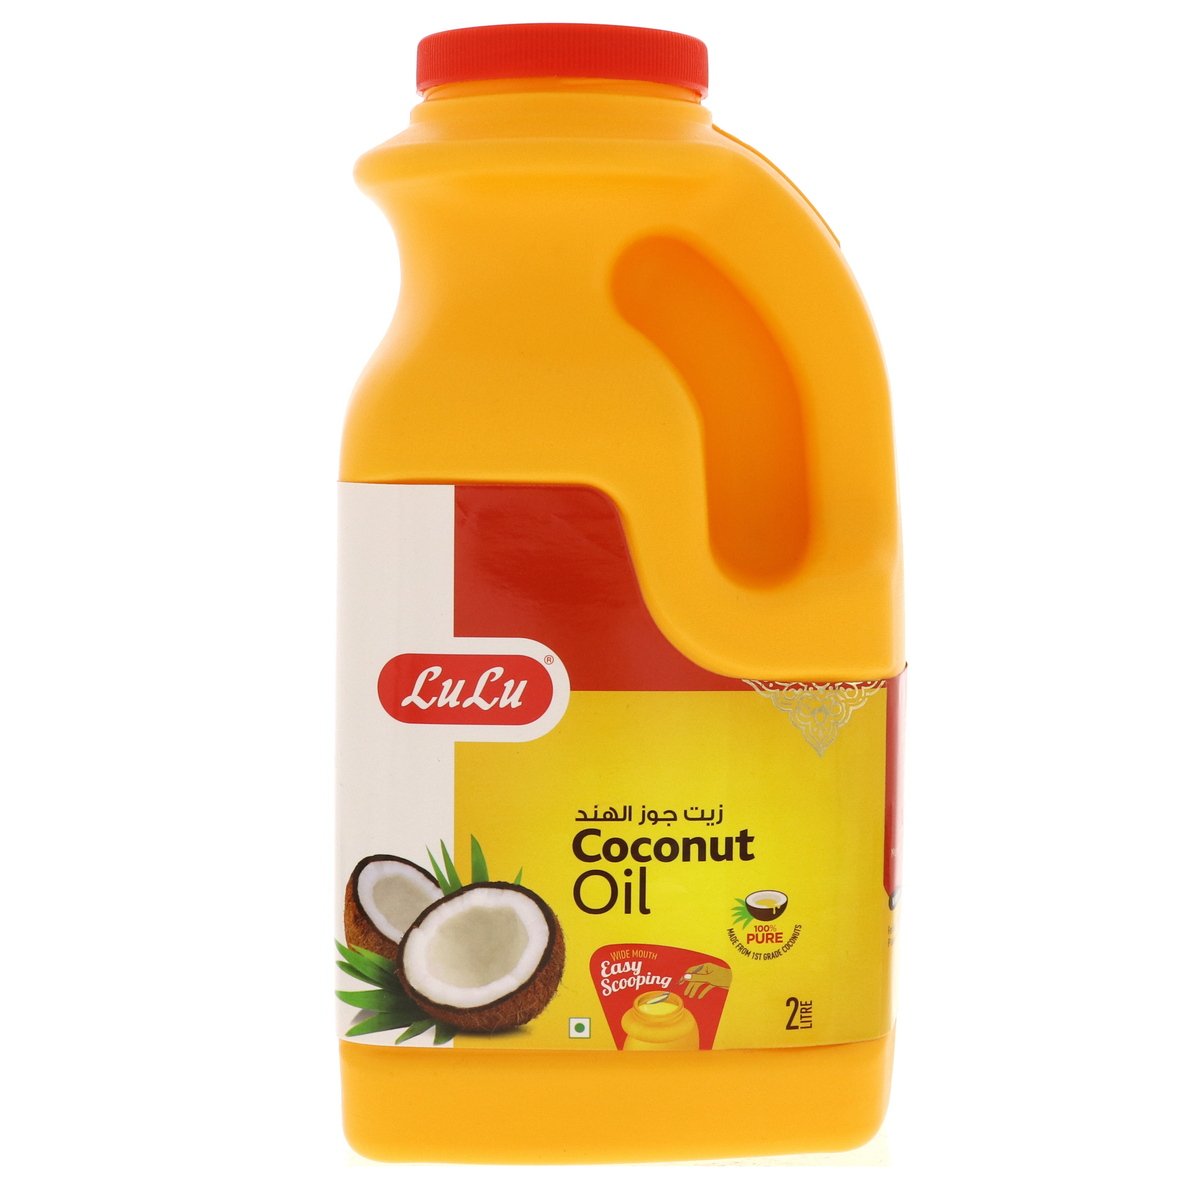 اشتري قم بشراء لولو زيت جوز الهند النقي 2 لتر Online at Best Price من الموقع - من لولو هايبر ماركت Coconut Oil في الكويت